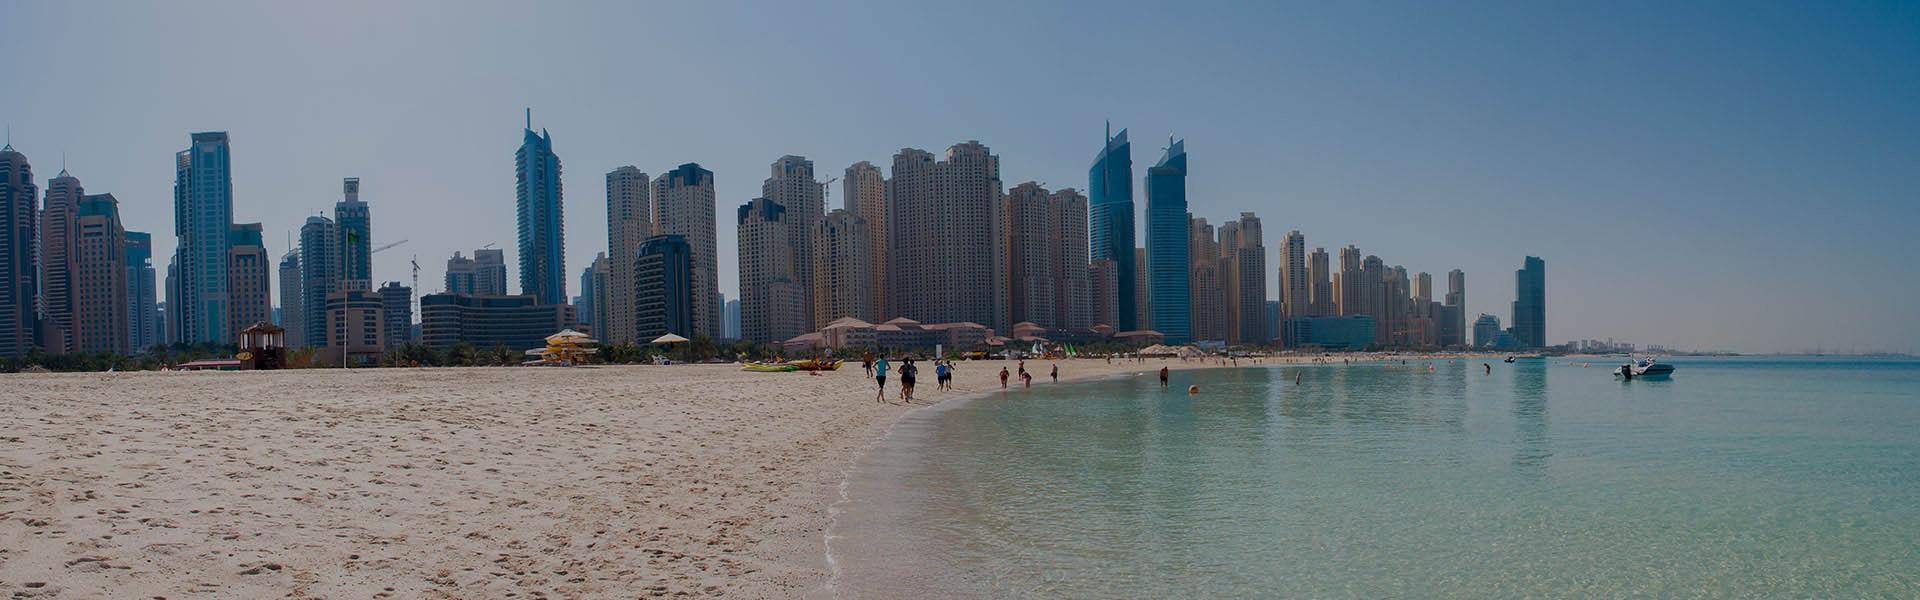 ساحل جمیرا دبی  Jumeirah Beach Dubai